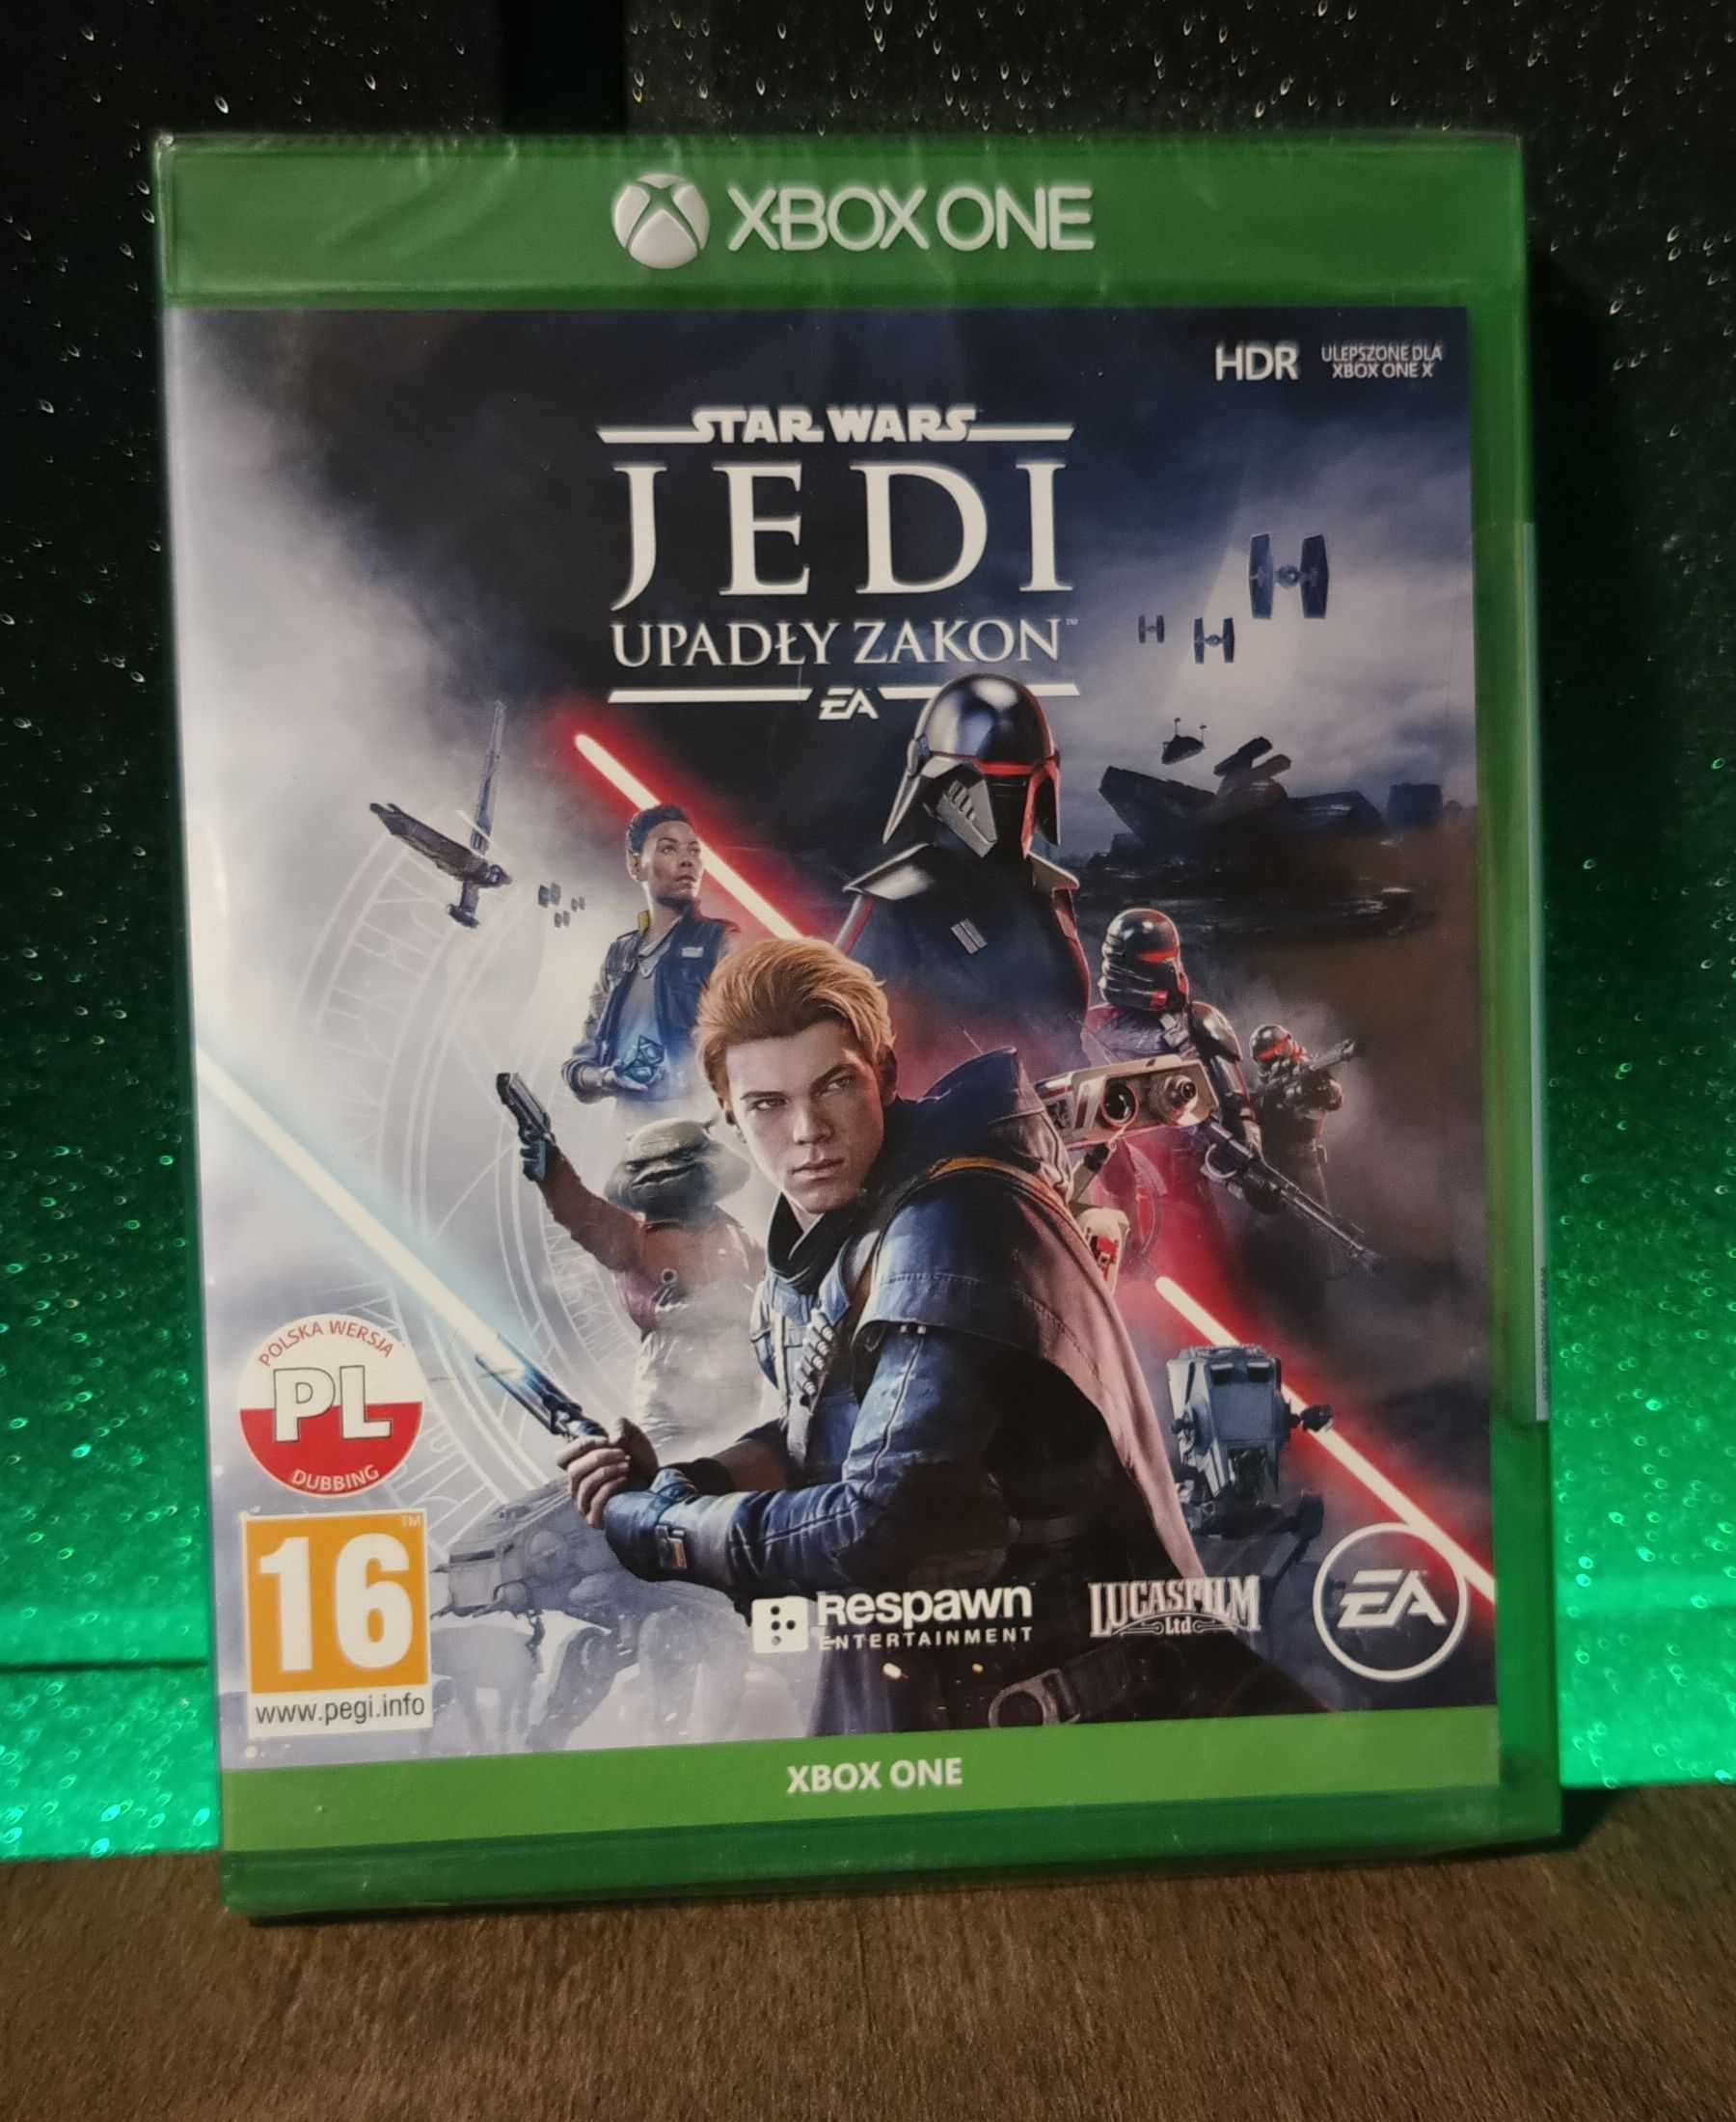 Star Wars Jedi: Upadły Zakon Xbox One S / Series X - super gra akcji